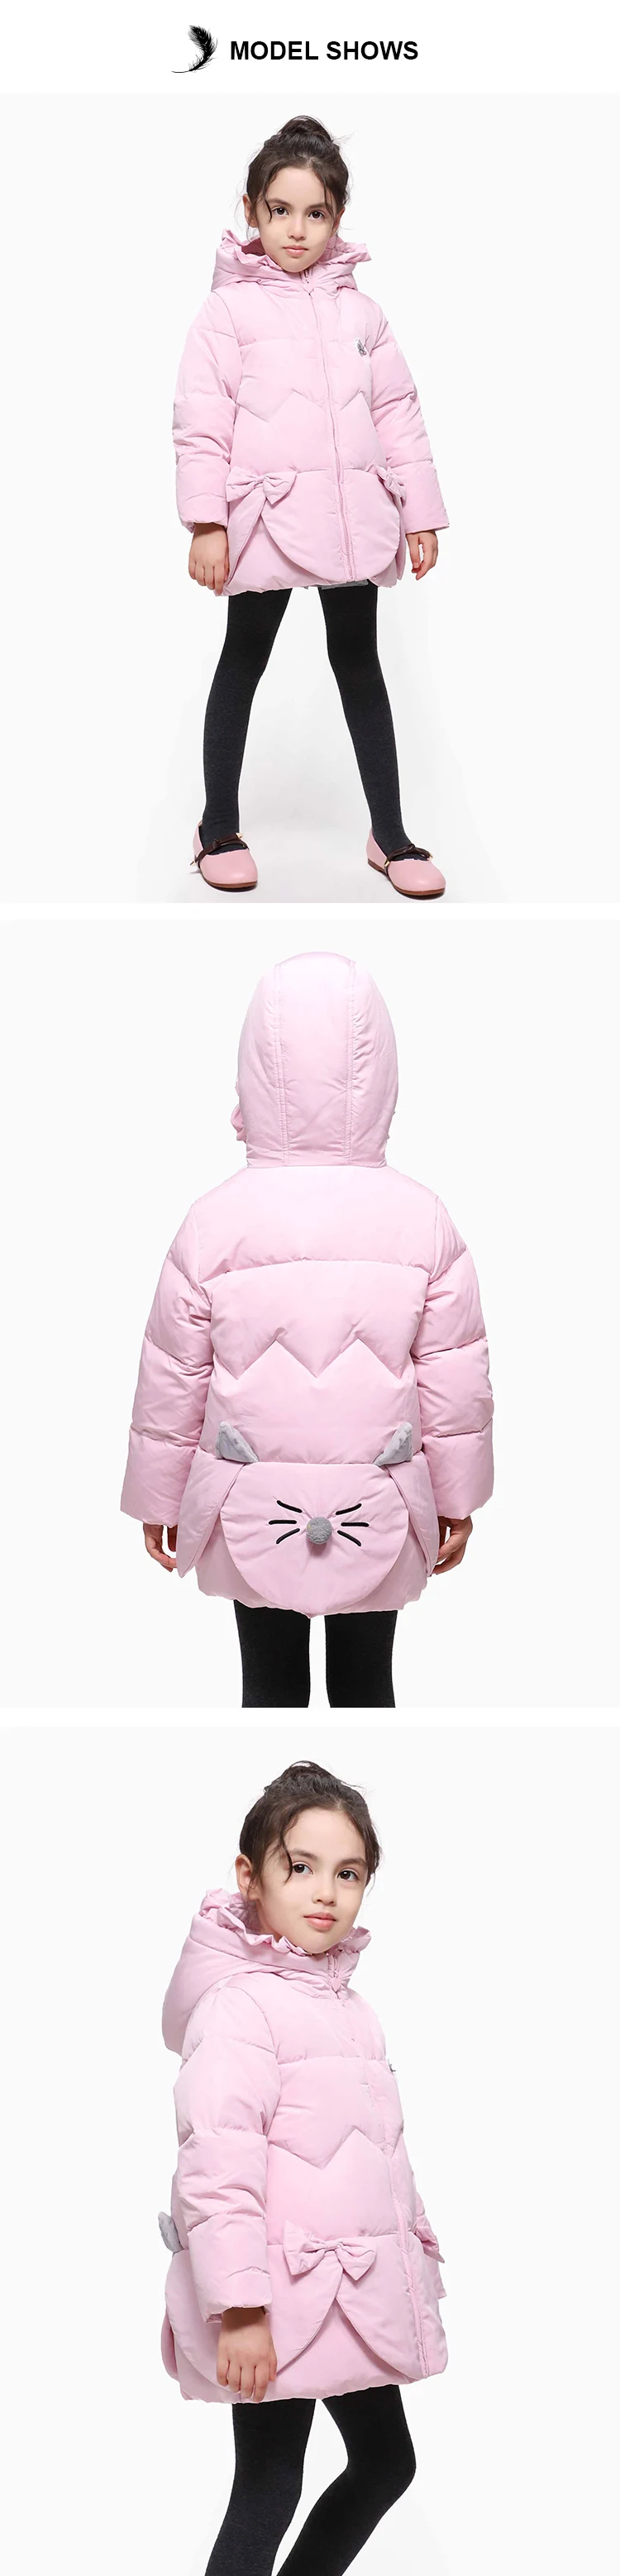 Bilemi/мягкие, модные, красивые, дешевые, пушистые, теплые, из полиэстера, крутые, детские, милые, лучшие зимние куртки для девочек